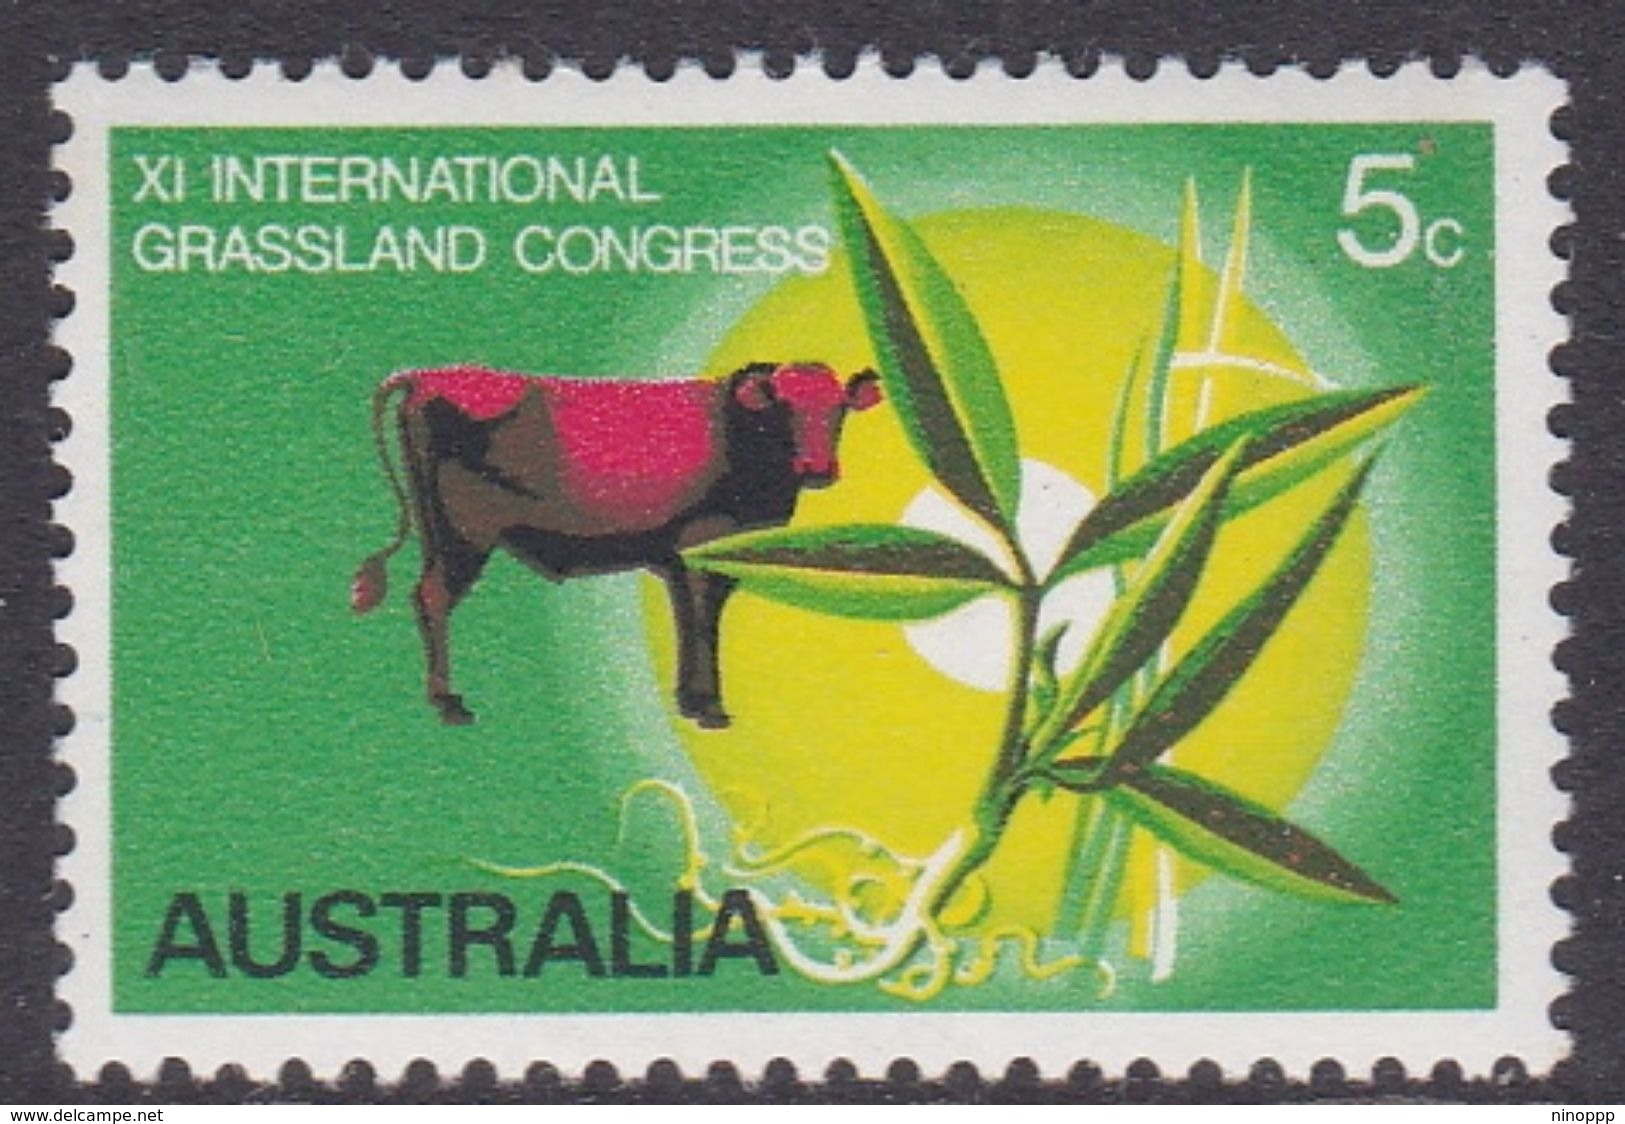 Australia ASC 494 1970 Grassland Congress, Mint Never Hinged - Nuevos